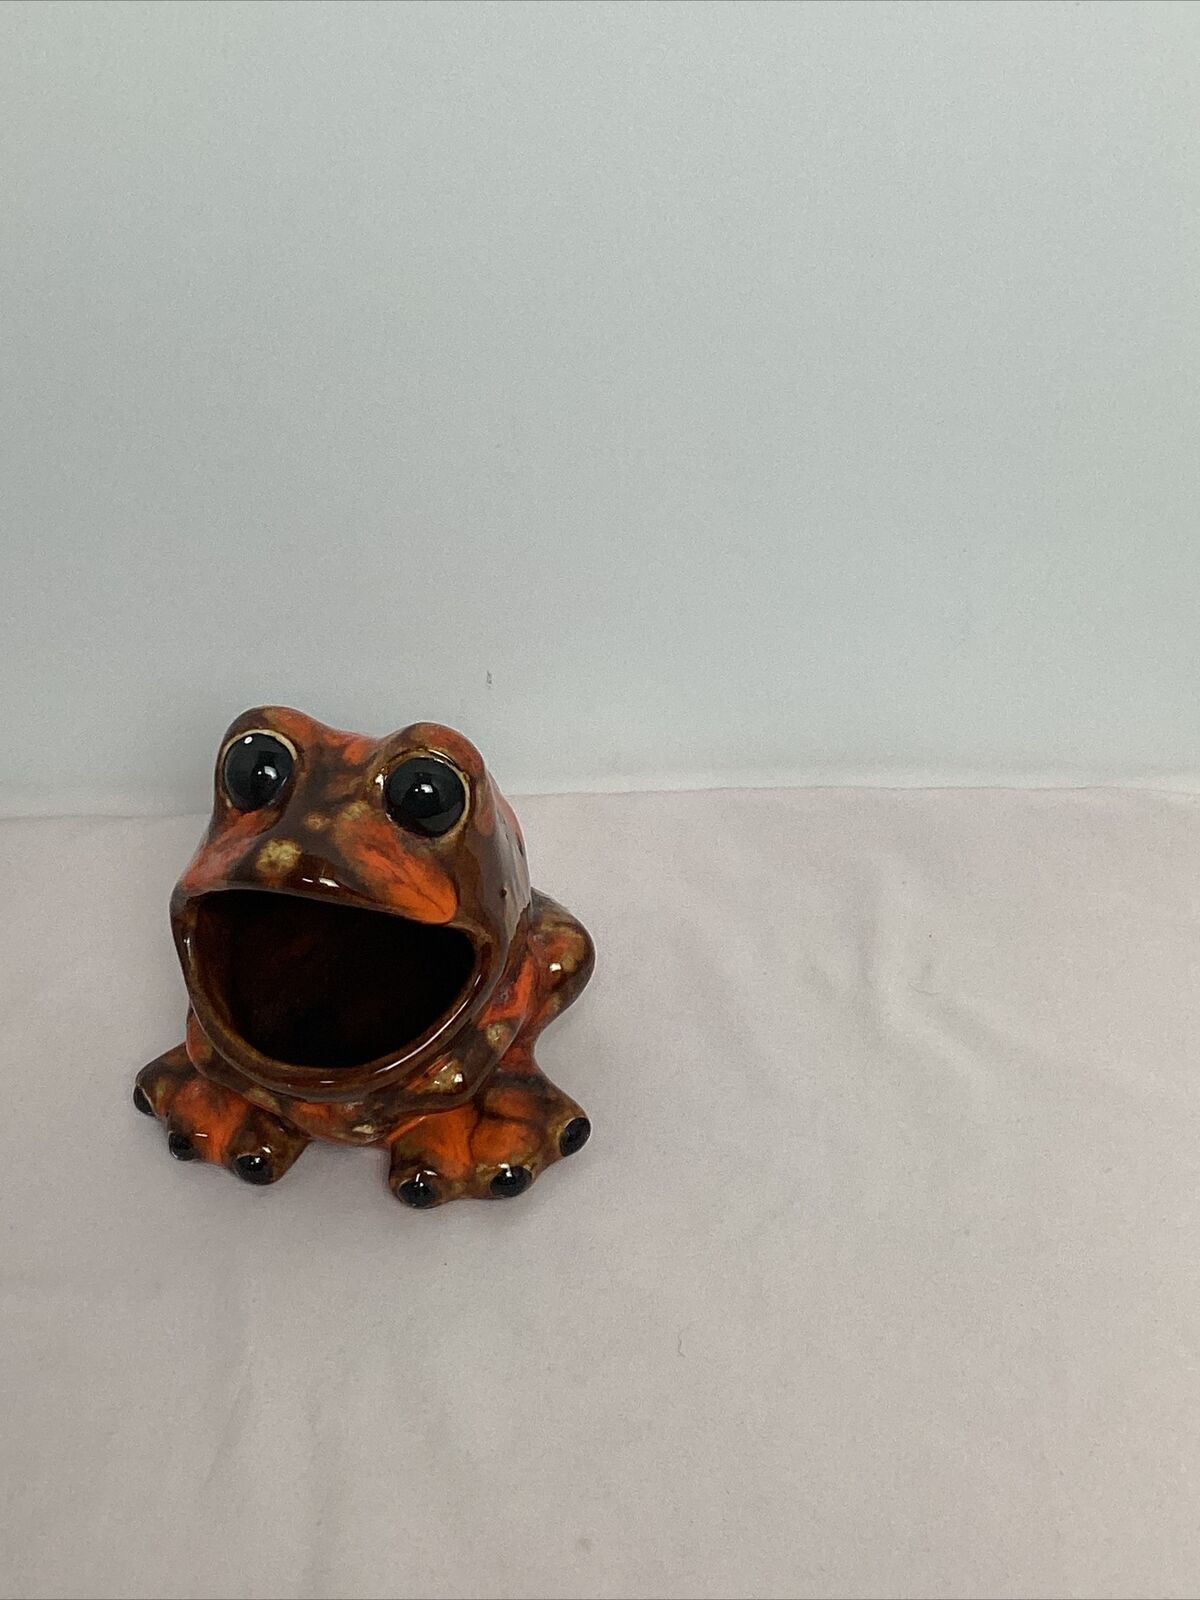 Large Vtg Scrubber Frog Sponge Holder Open Mouth Orange Brown Glazed Ceramic